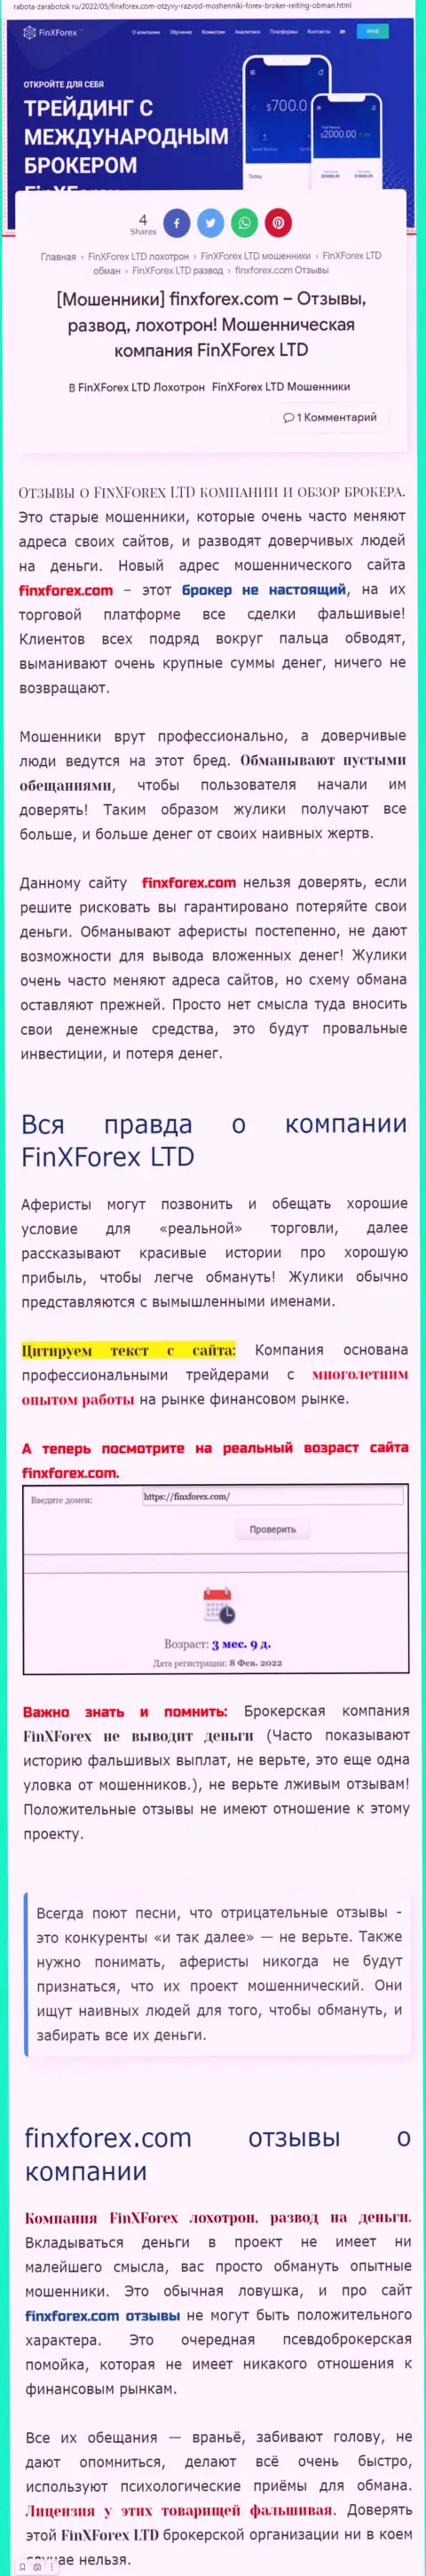 Создатель обзора о FinXForex Com предупреждает, что в организации FinXForex Com жульничают